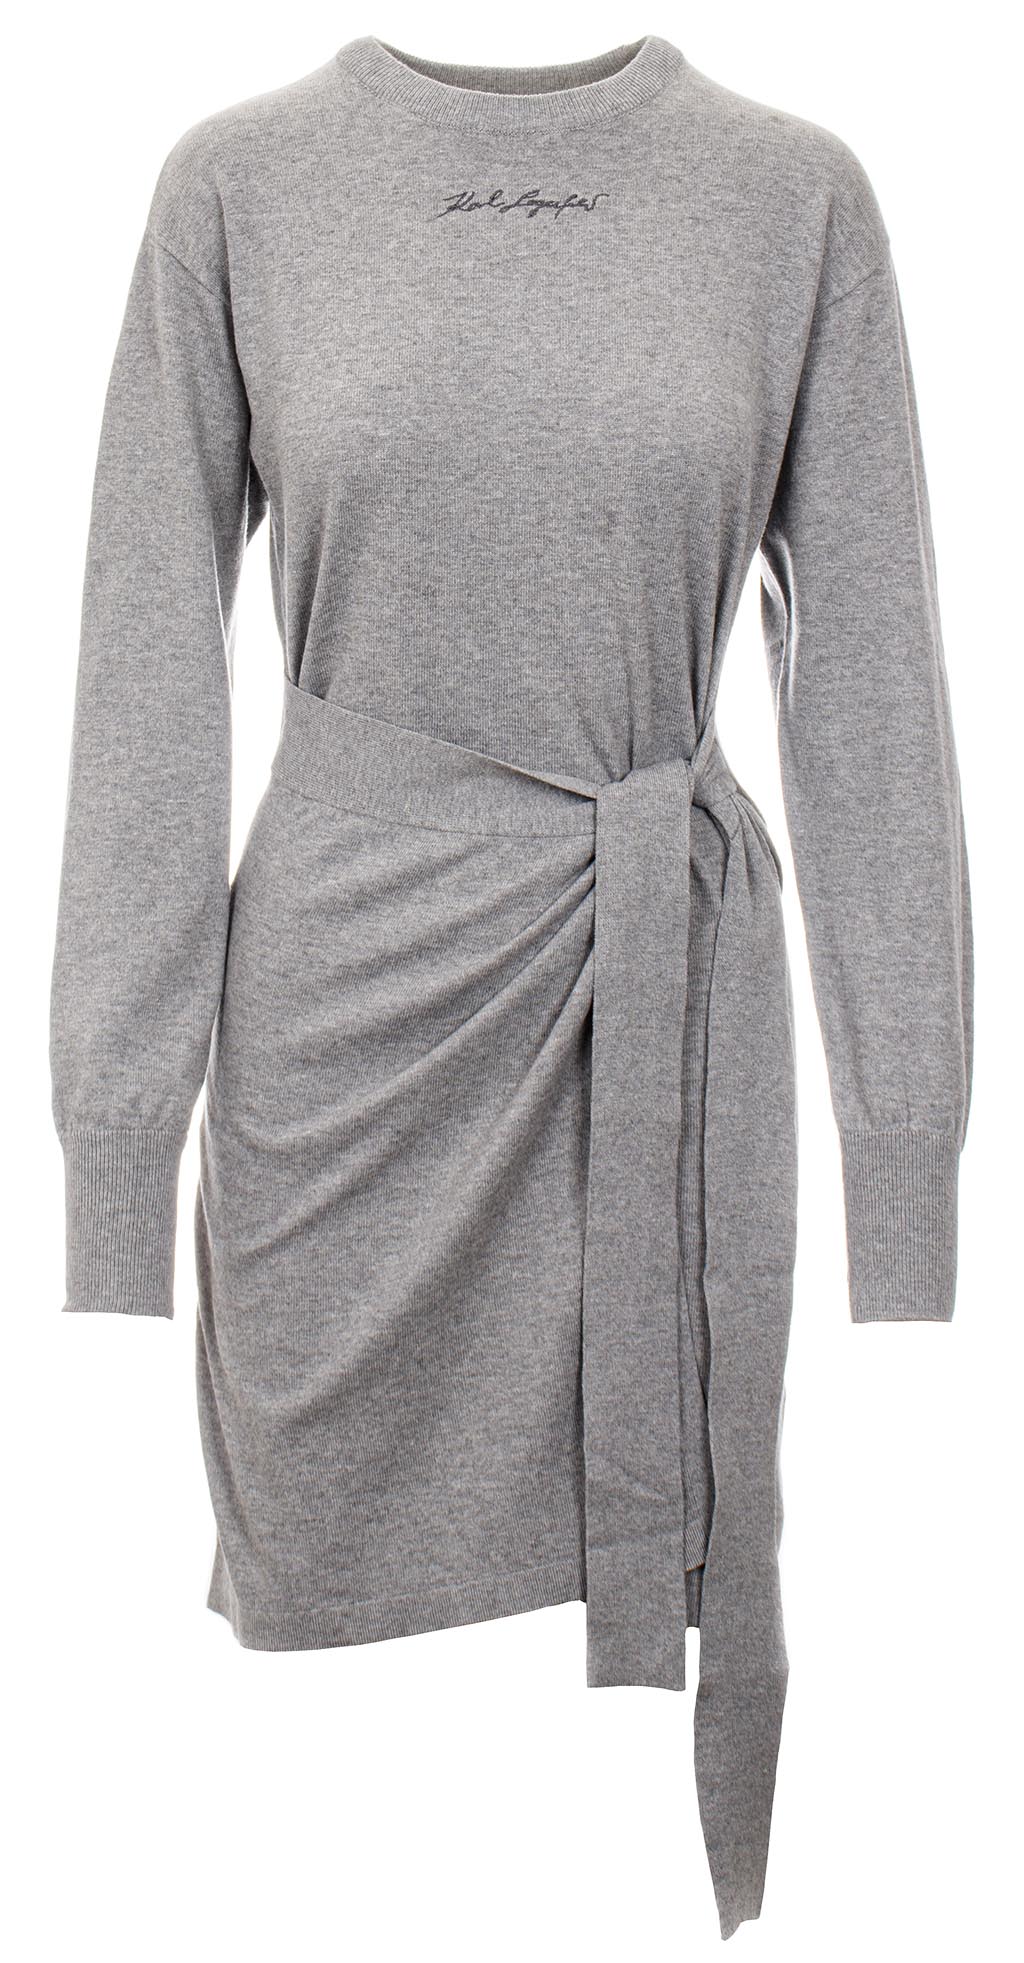 Karl Lagerfeld dámské úpletové šaty Knit šedé Velikost: M